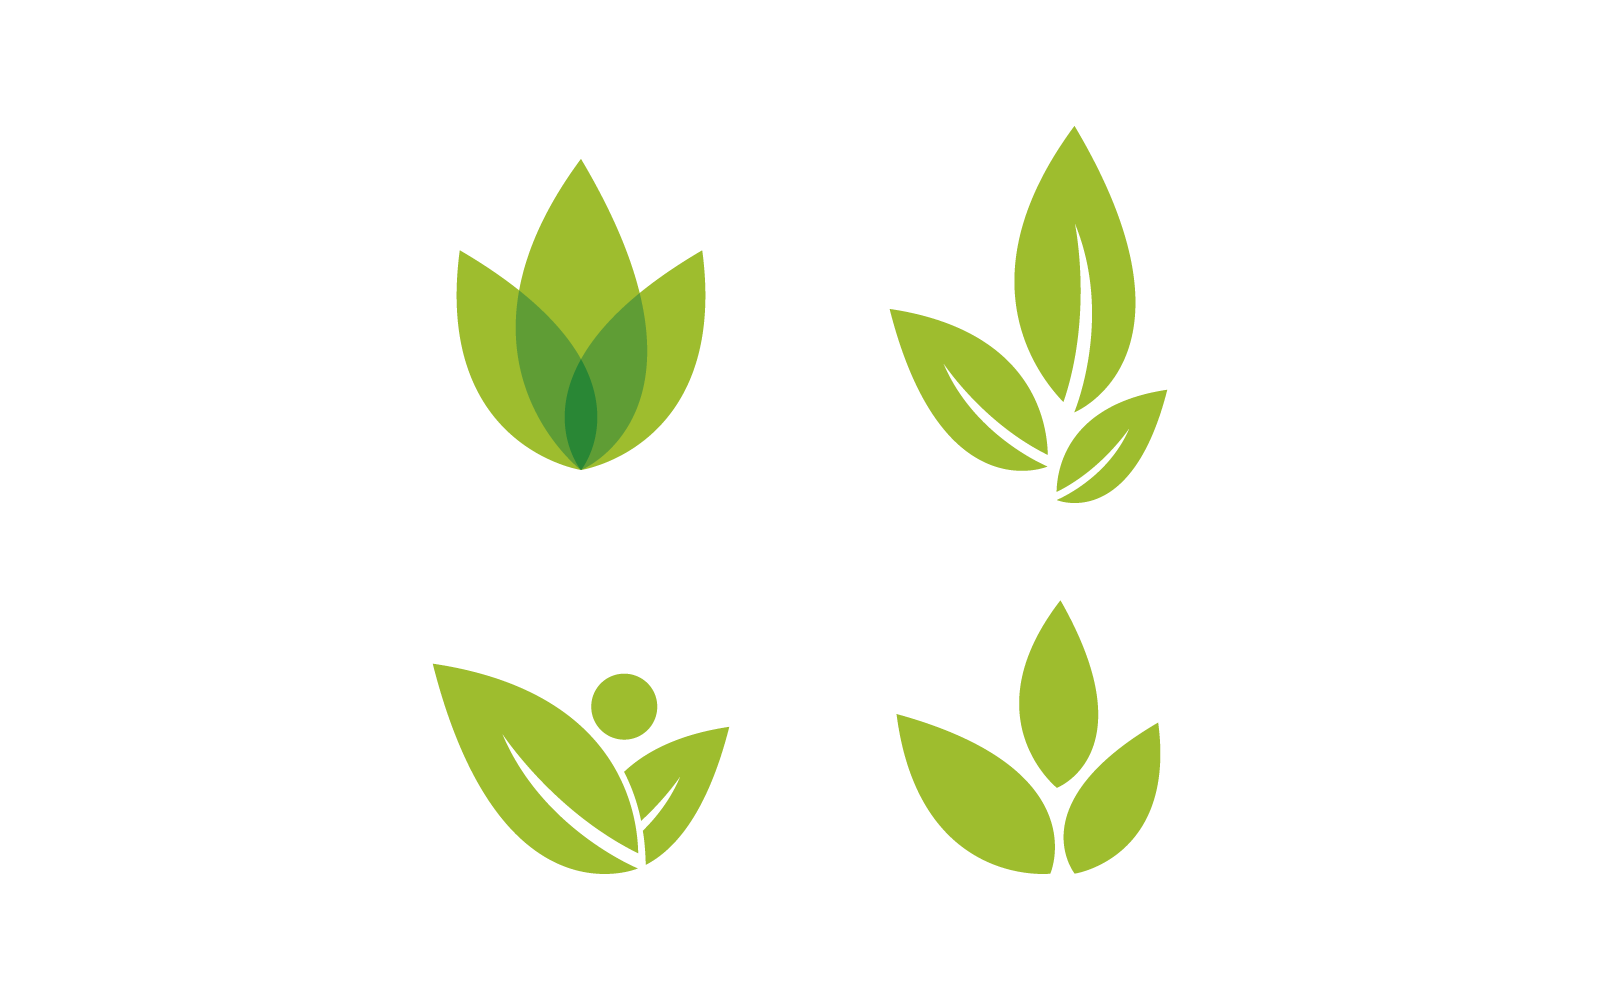 Green leaf illustration nature logo vector design template